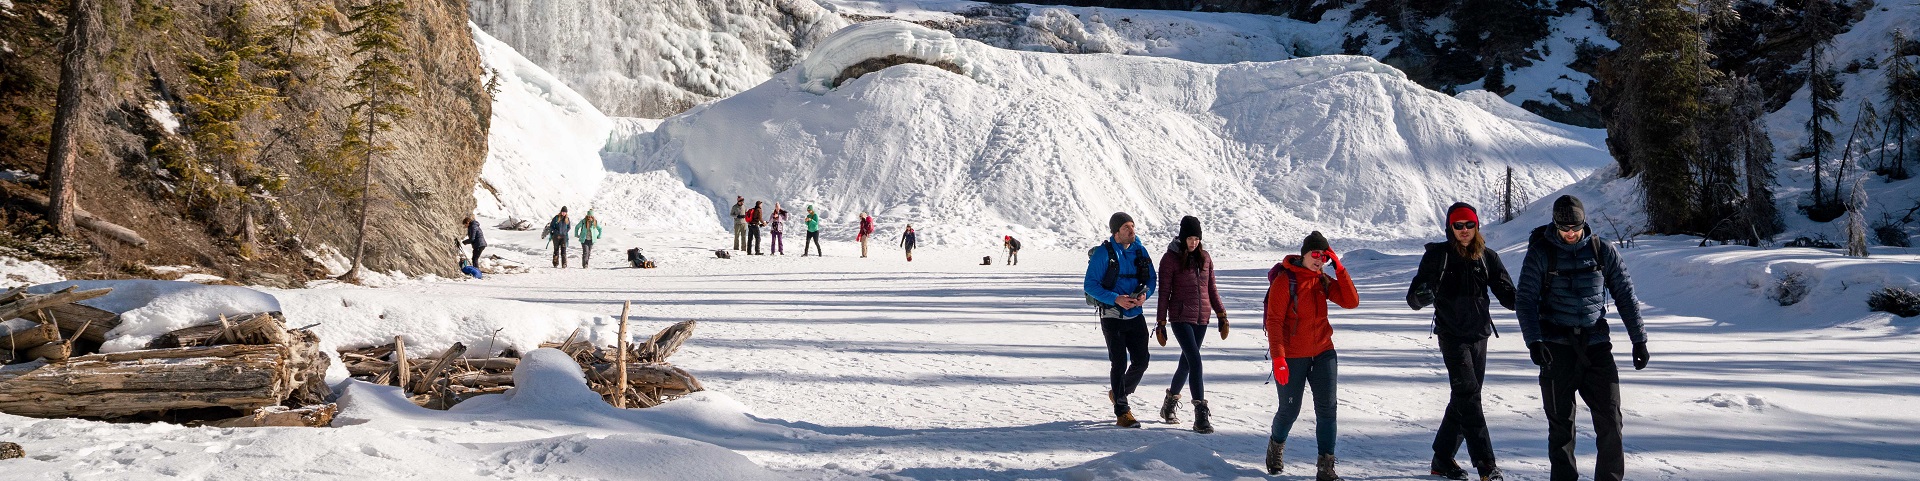 Groupe de cinq marcheurs devant les chutes Wapta glacées et enneigées, et plusieurs individus au pied de la chute en arrière-plan.